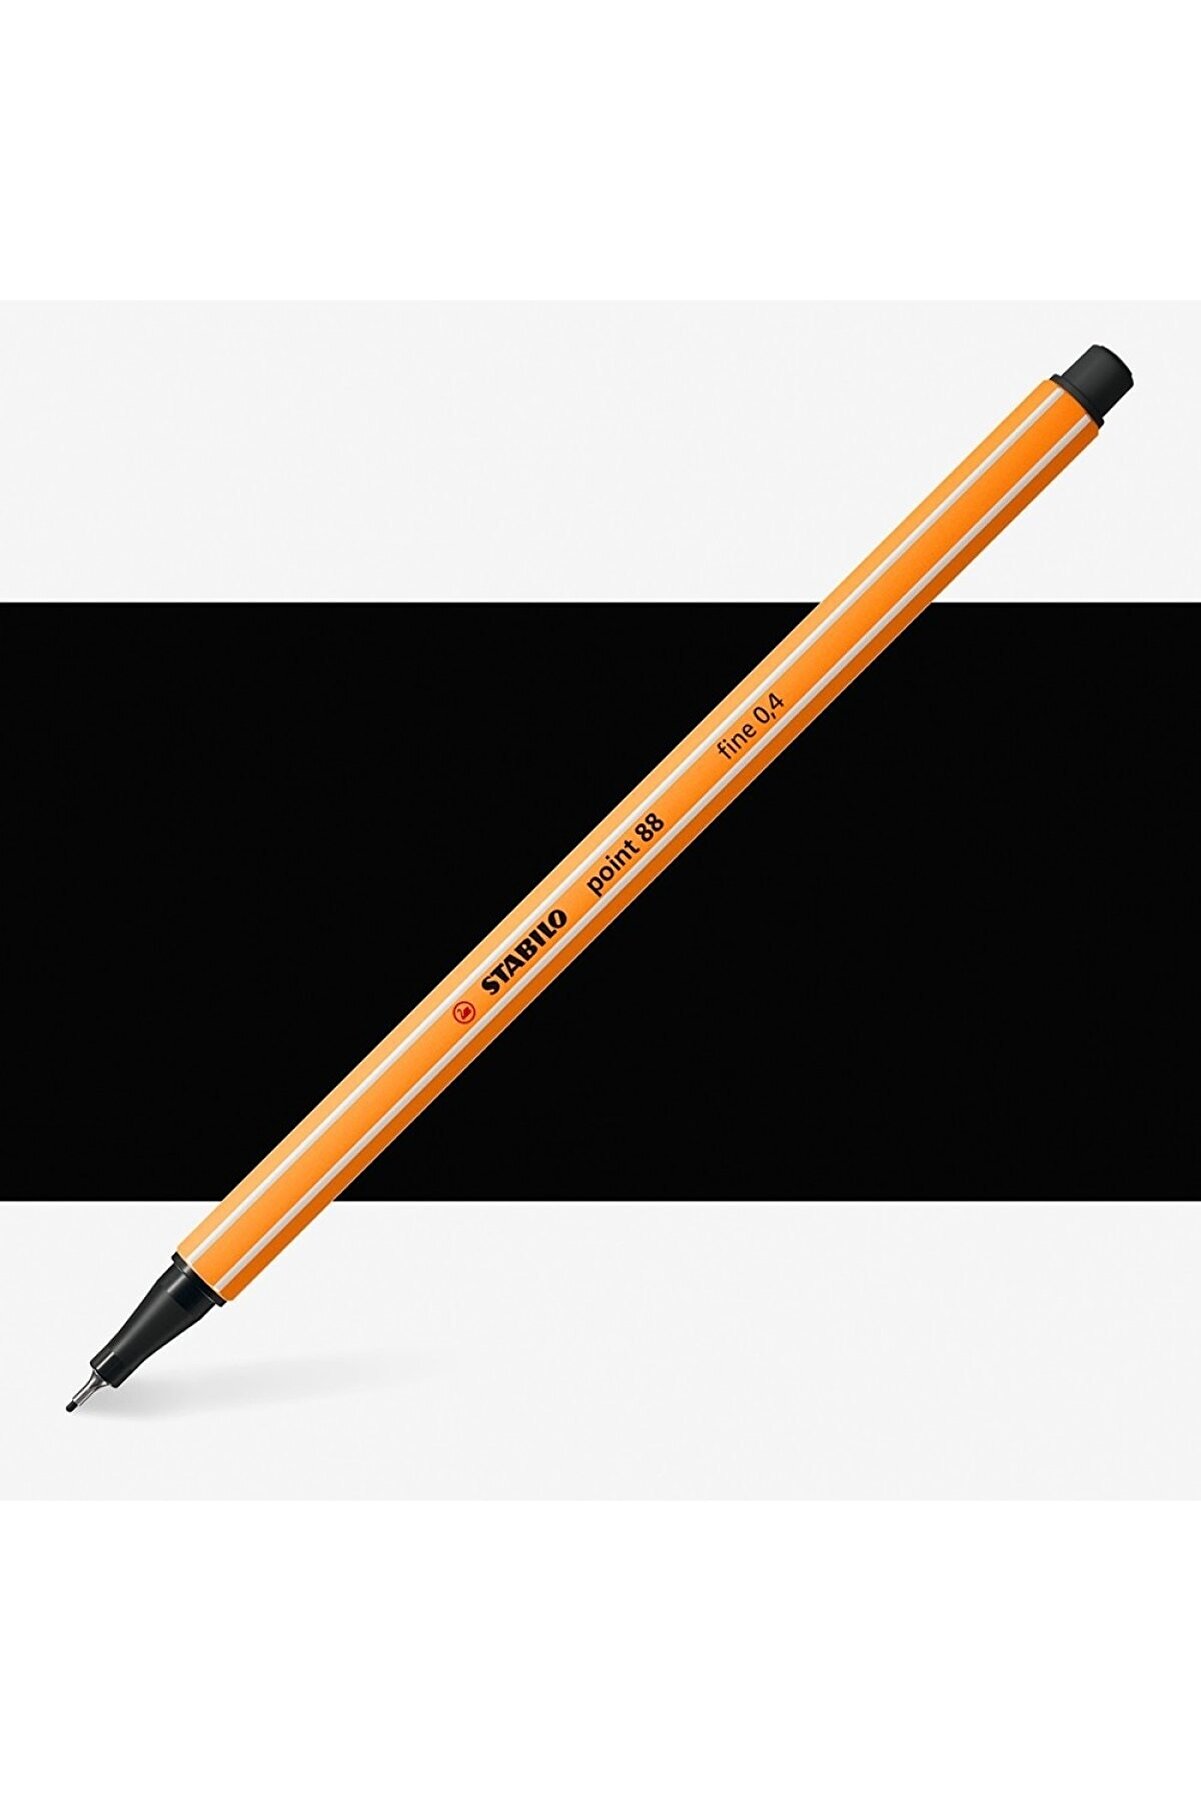 Stabilo Point 88 Fineliner Pen 0.4mm Ince Keçe Uçlu Kalem Siyah